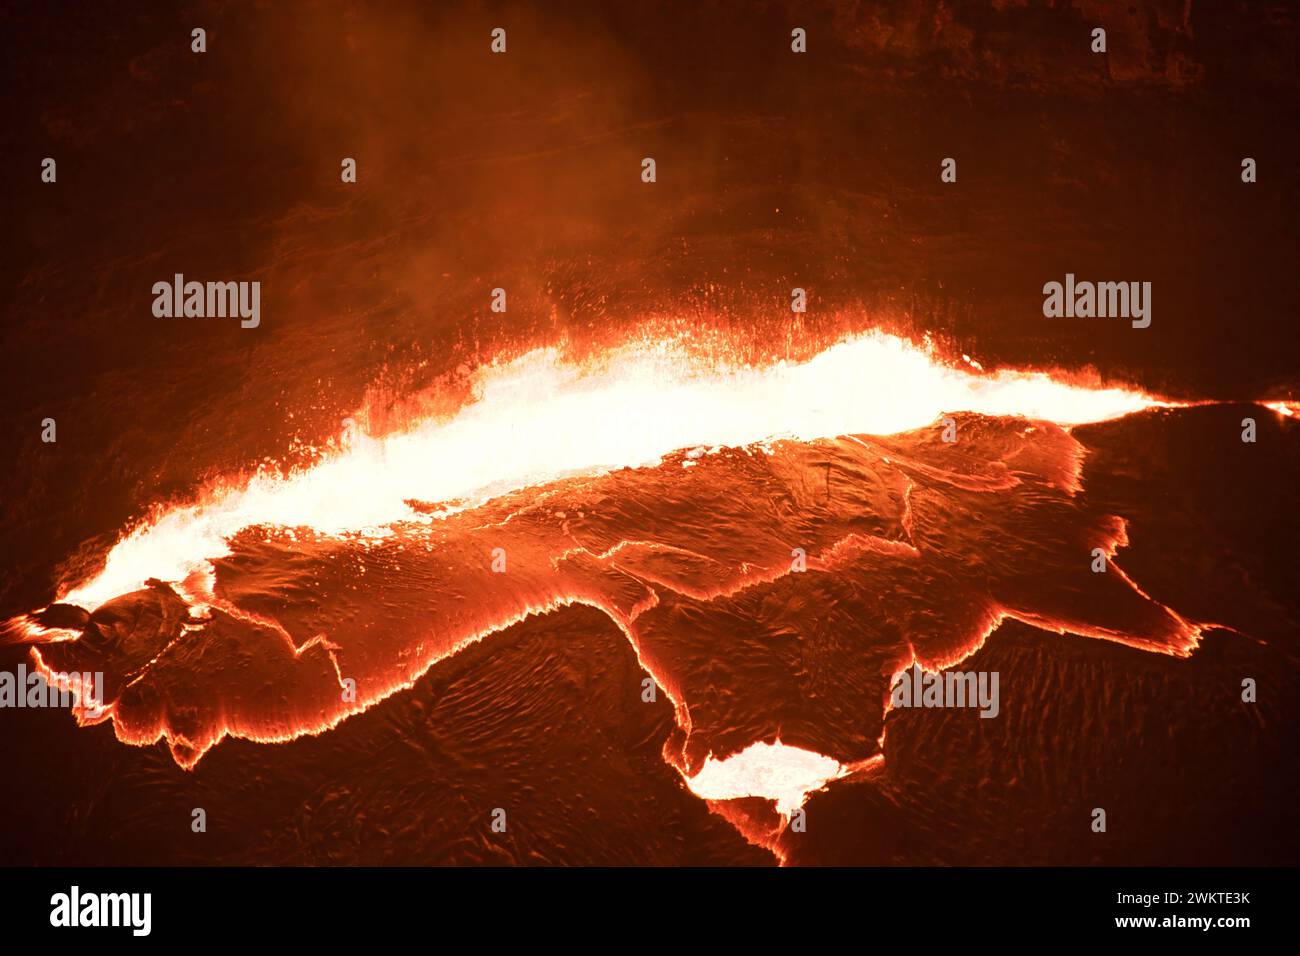 Dieses Foto wurde vom Kilauea-Vulkan in der Nacht aufgenommen. Dieser aktive Vulkan befindet sich auf der Big Island in Hawaii, Nordamerika Stockfoto